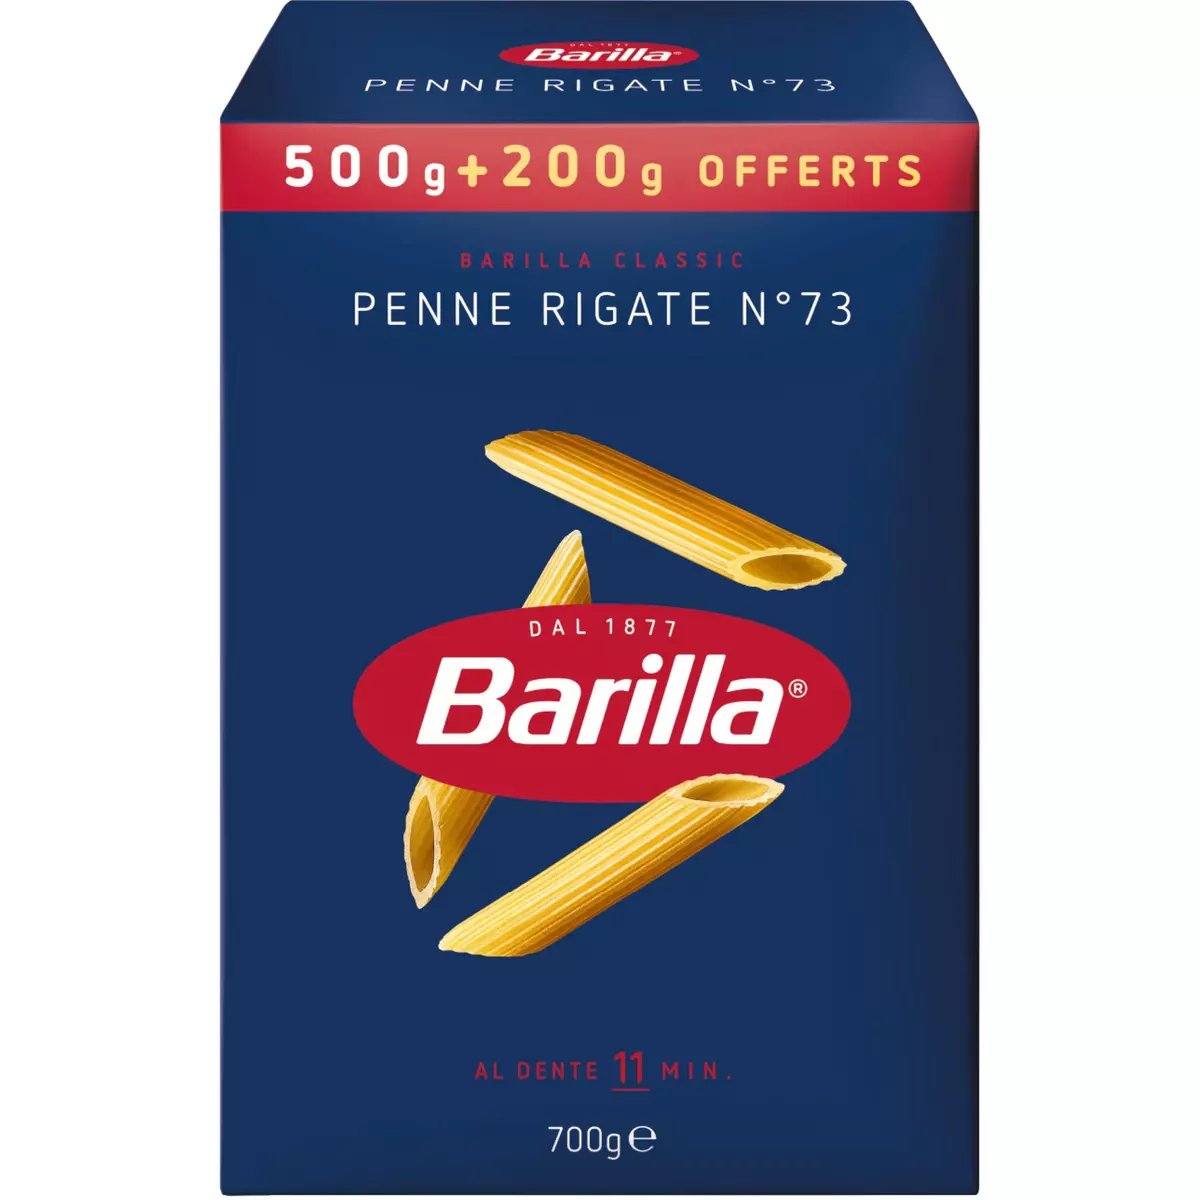 BARILLA Penne Rigate n°73 500g+200g offert